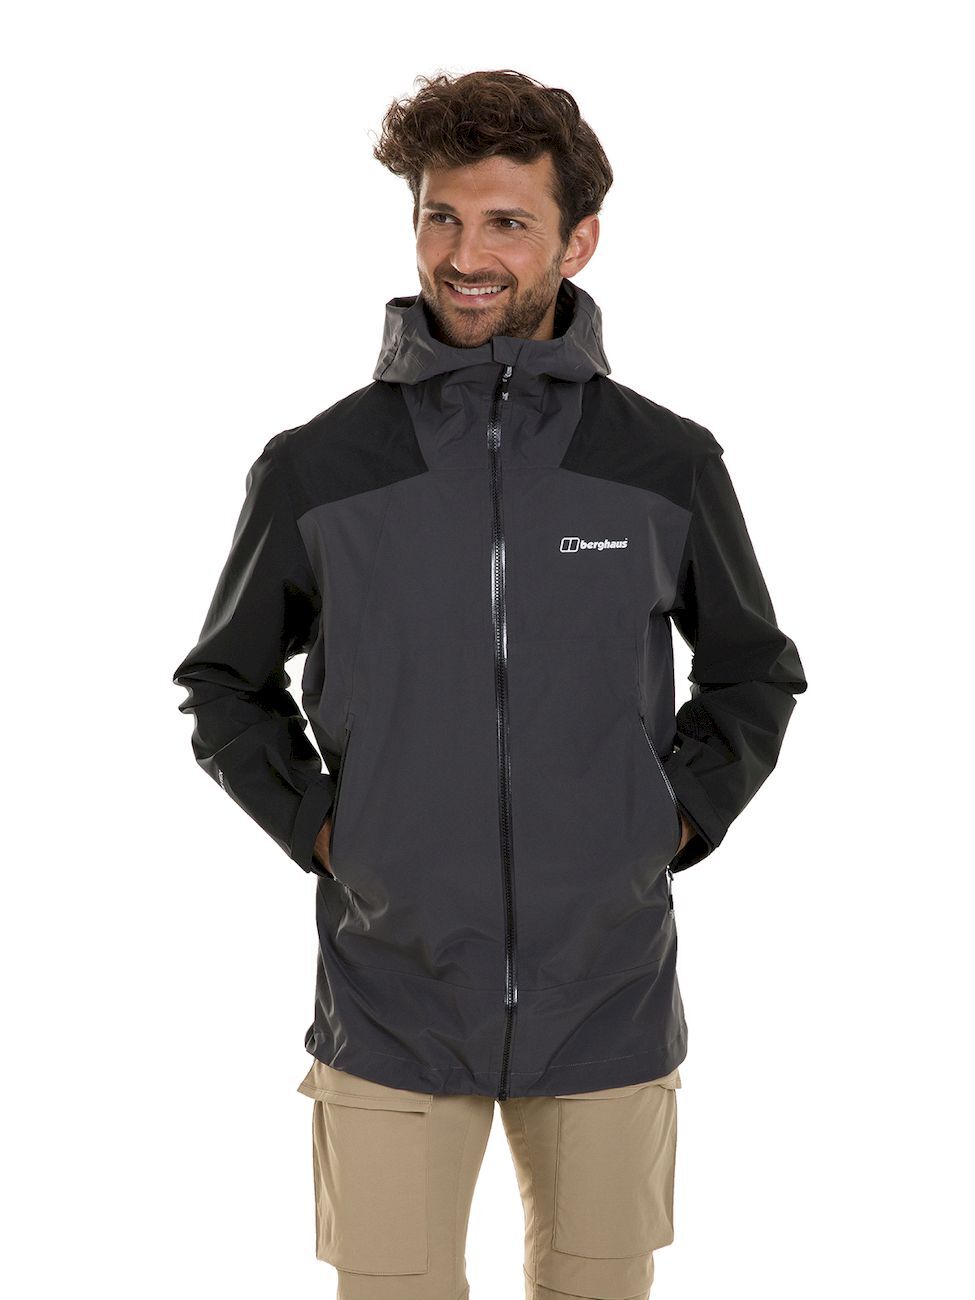 Berghaus Paclite Peak Jacket - Waterproof jacket - Men's